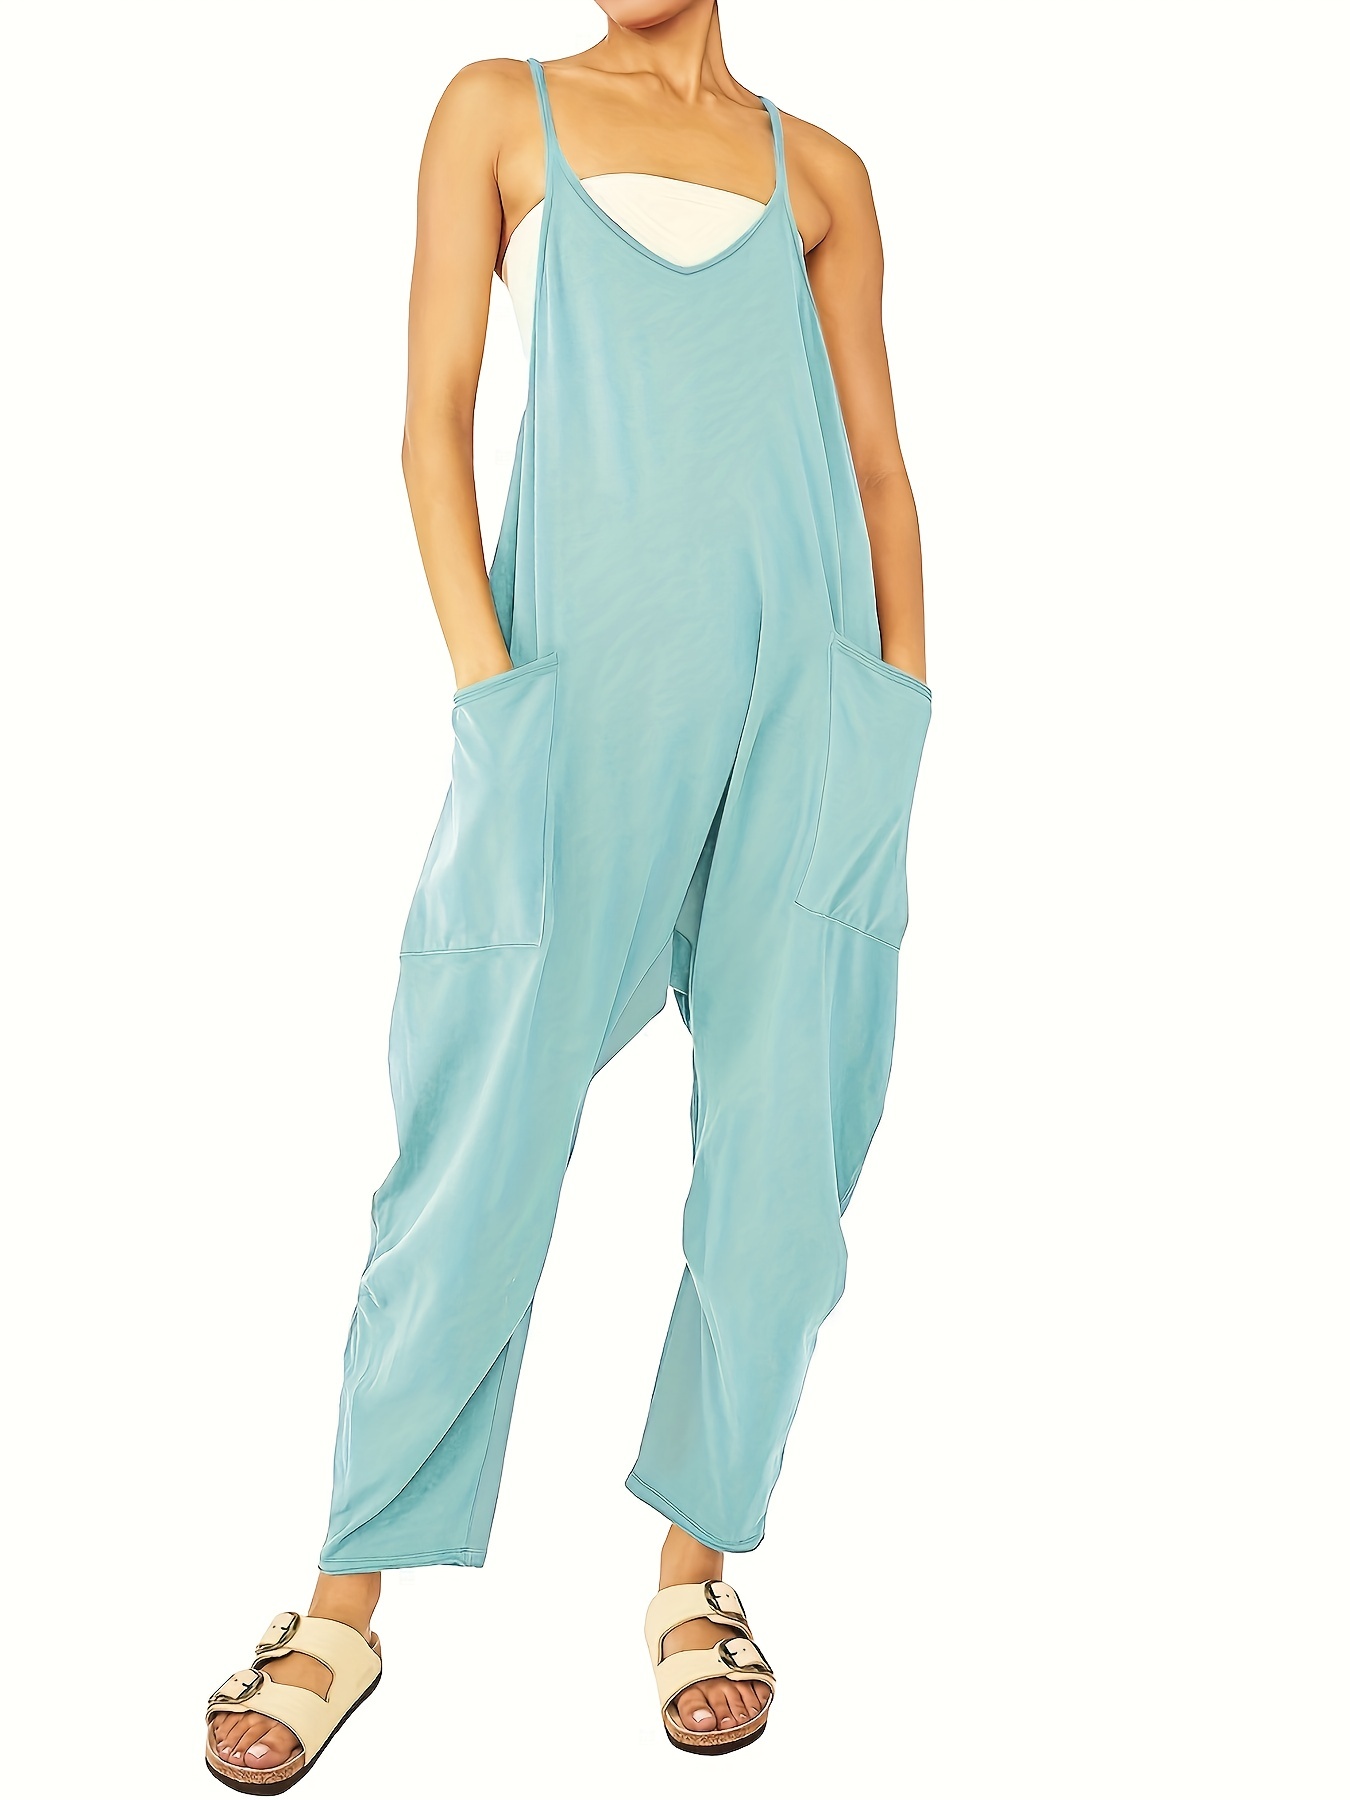 Chic Breezy Cami Jumpsuit - Solid Color, Versatile & Comfortable ...